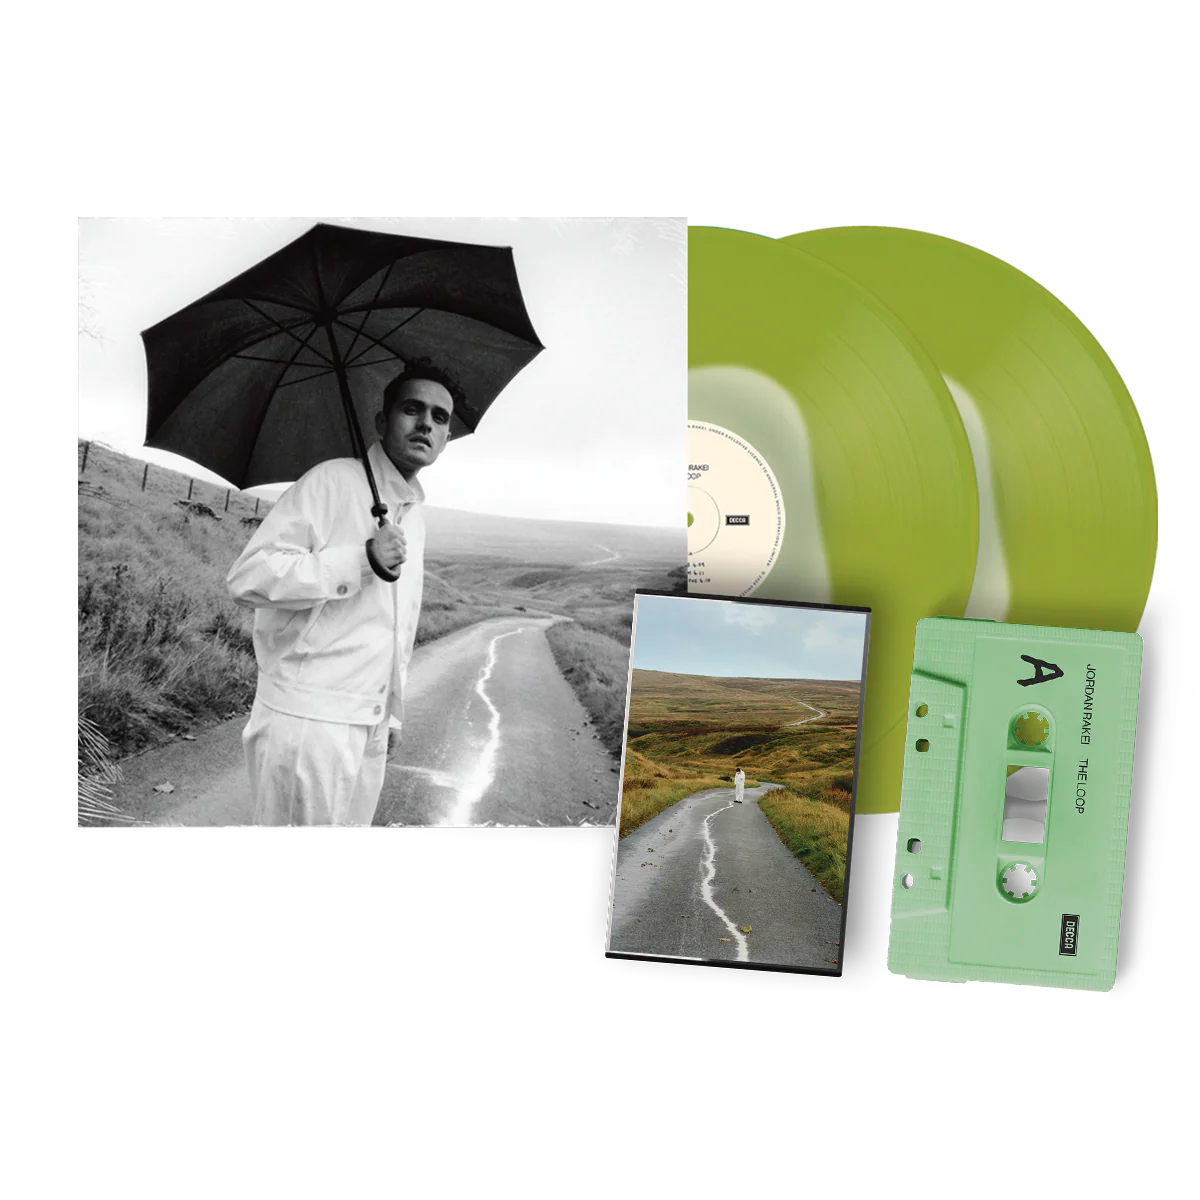 The Loop: Exclusive Signed Green Splatter Vinyl 2LP + Cassette